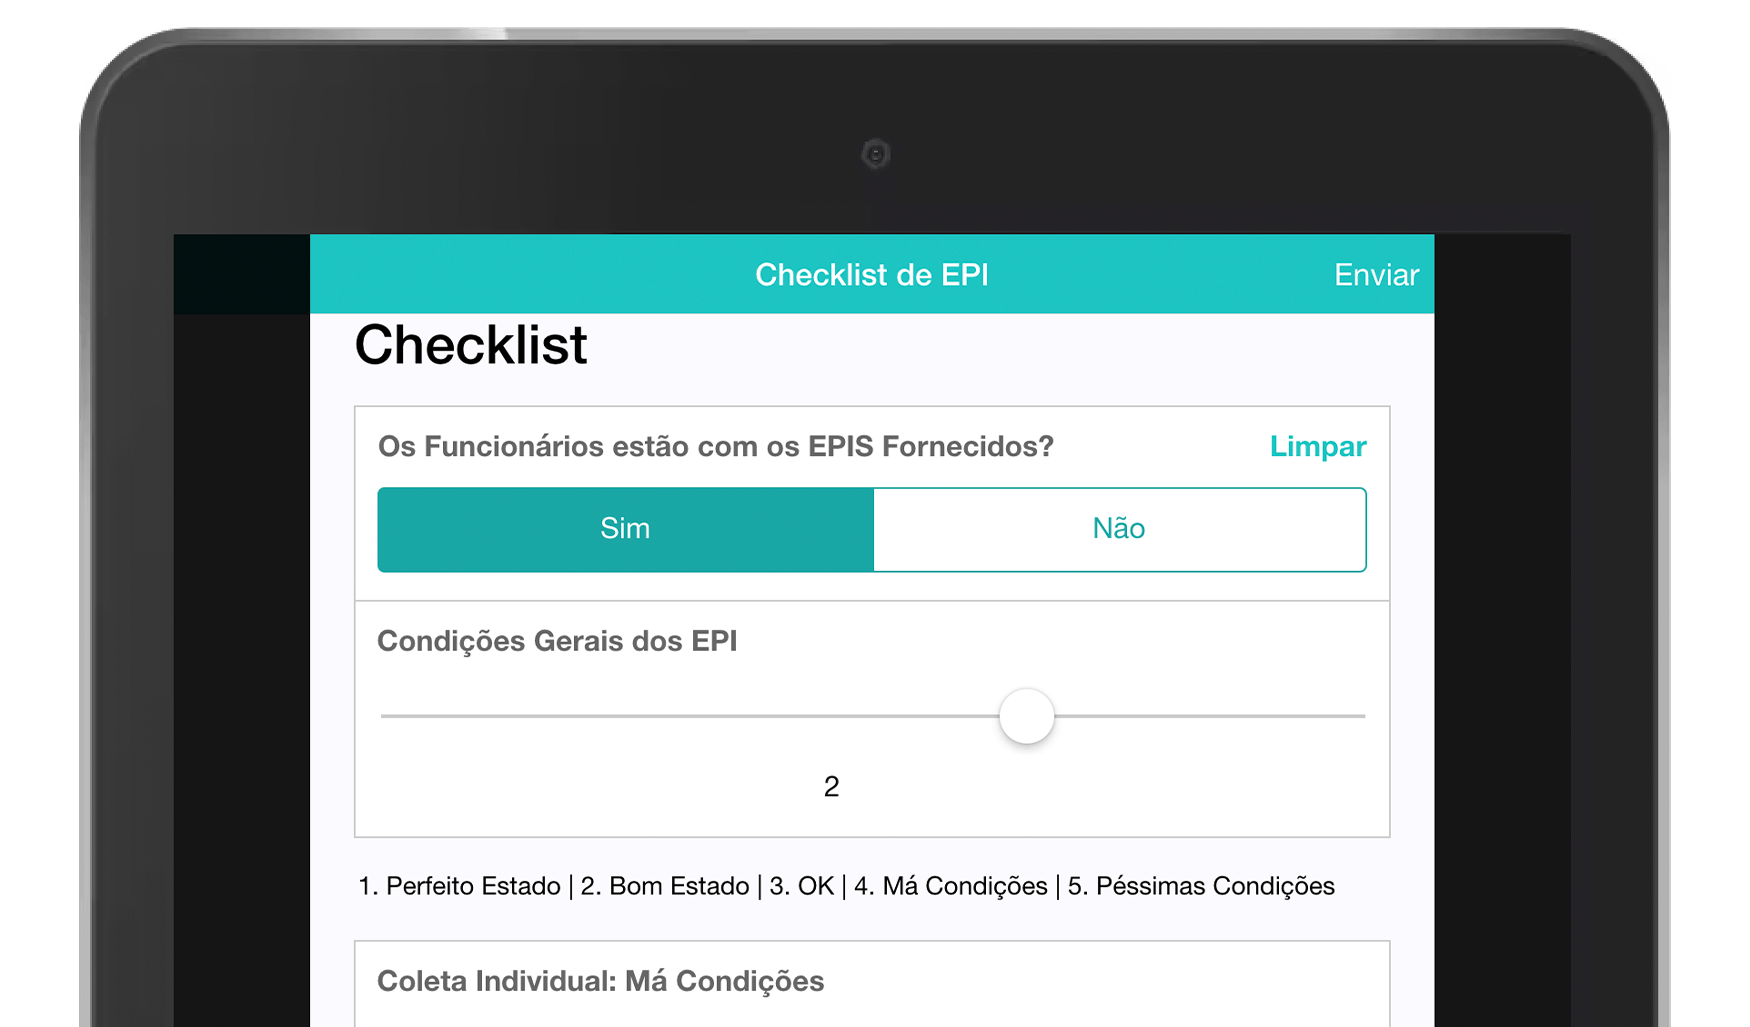 MoreApp Checklist de EPI App